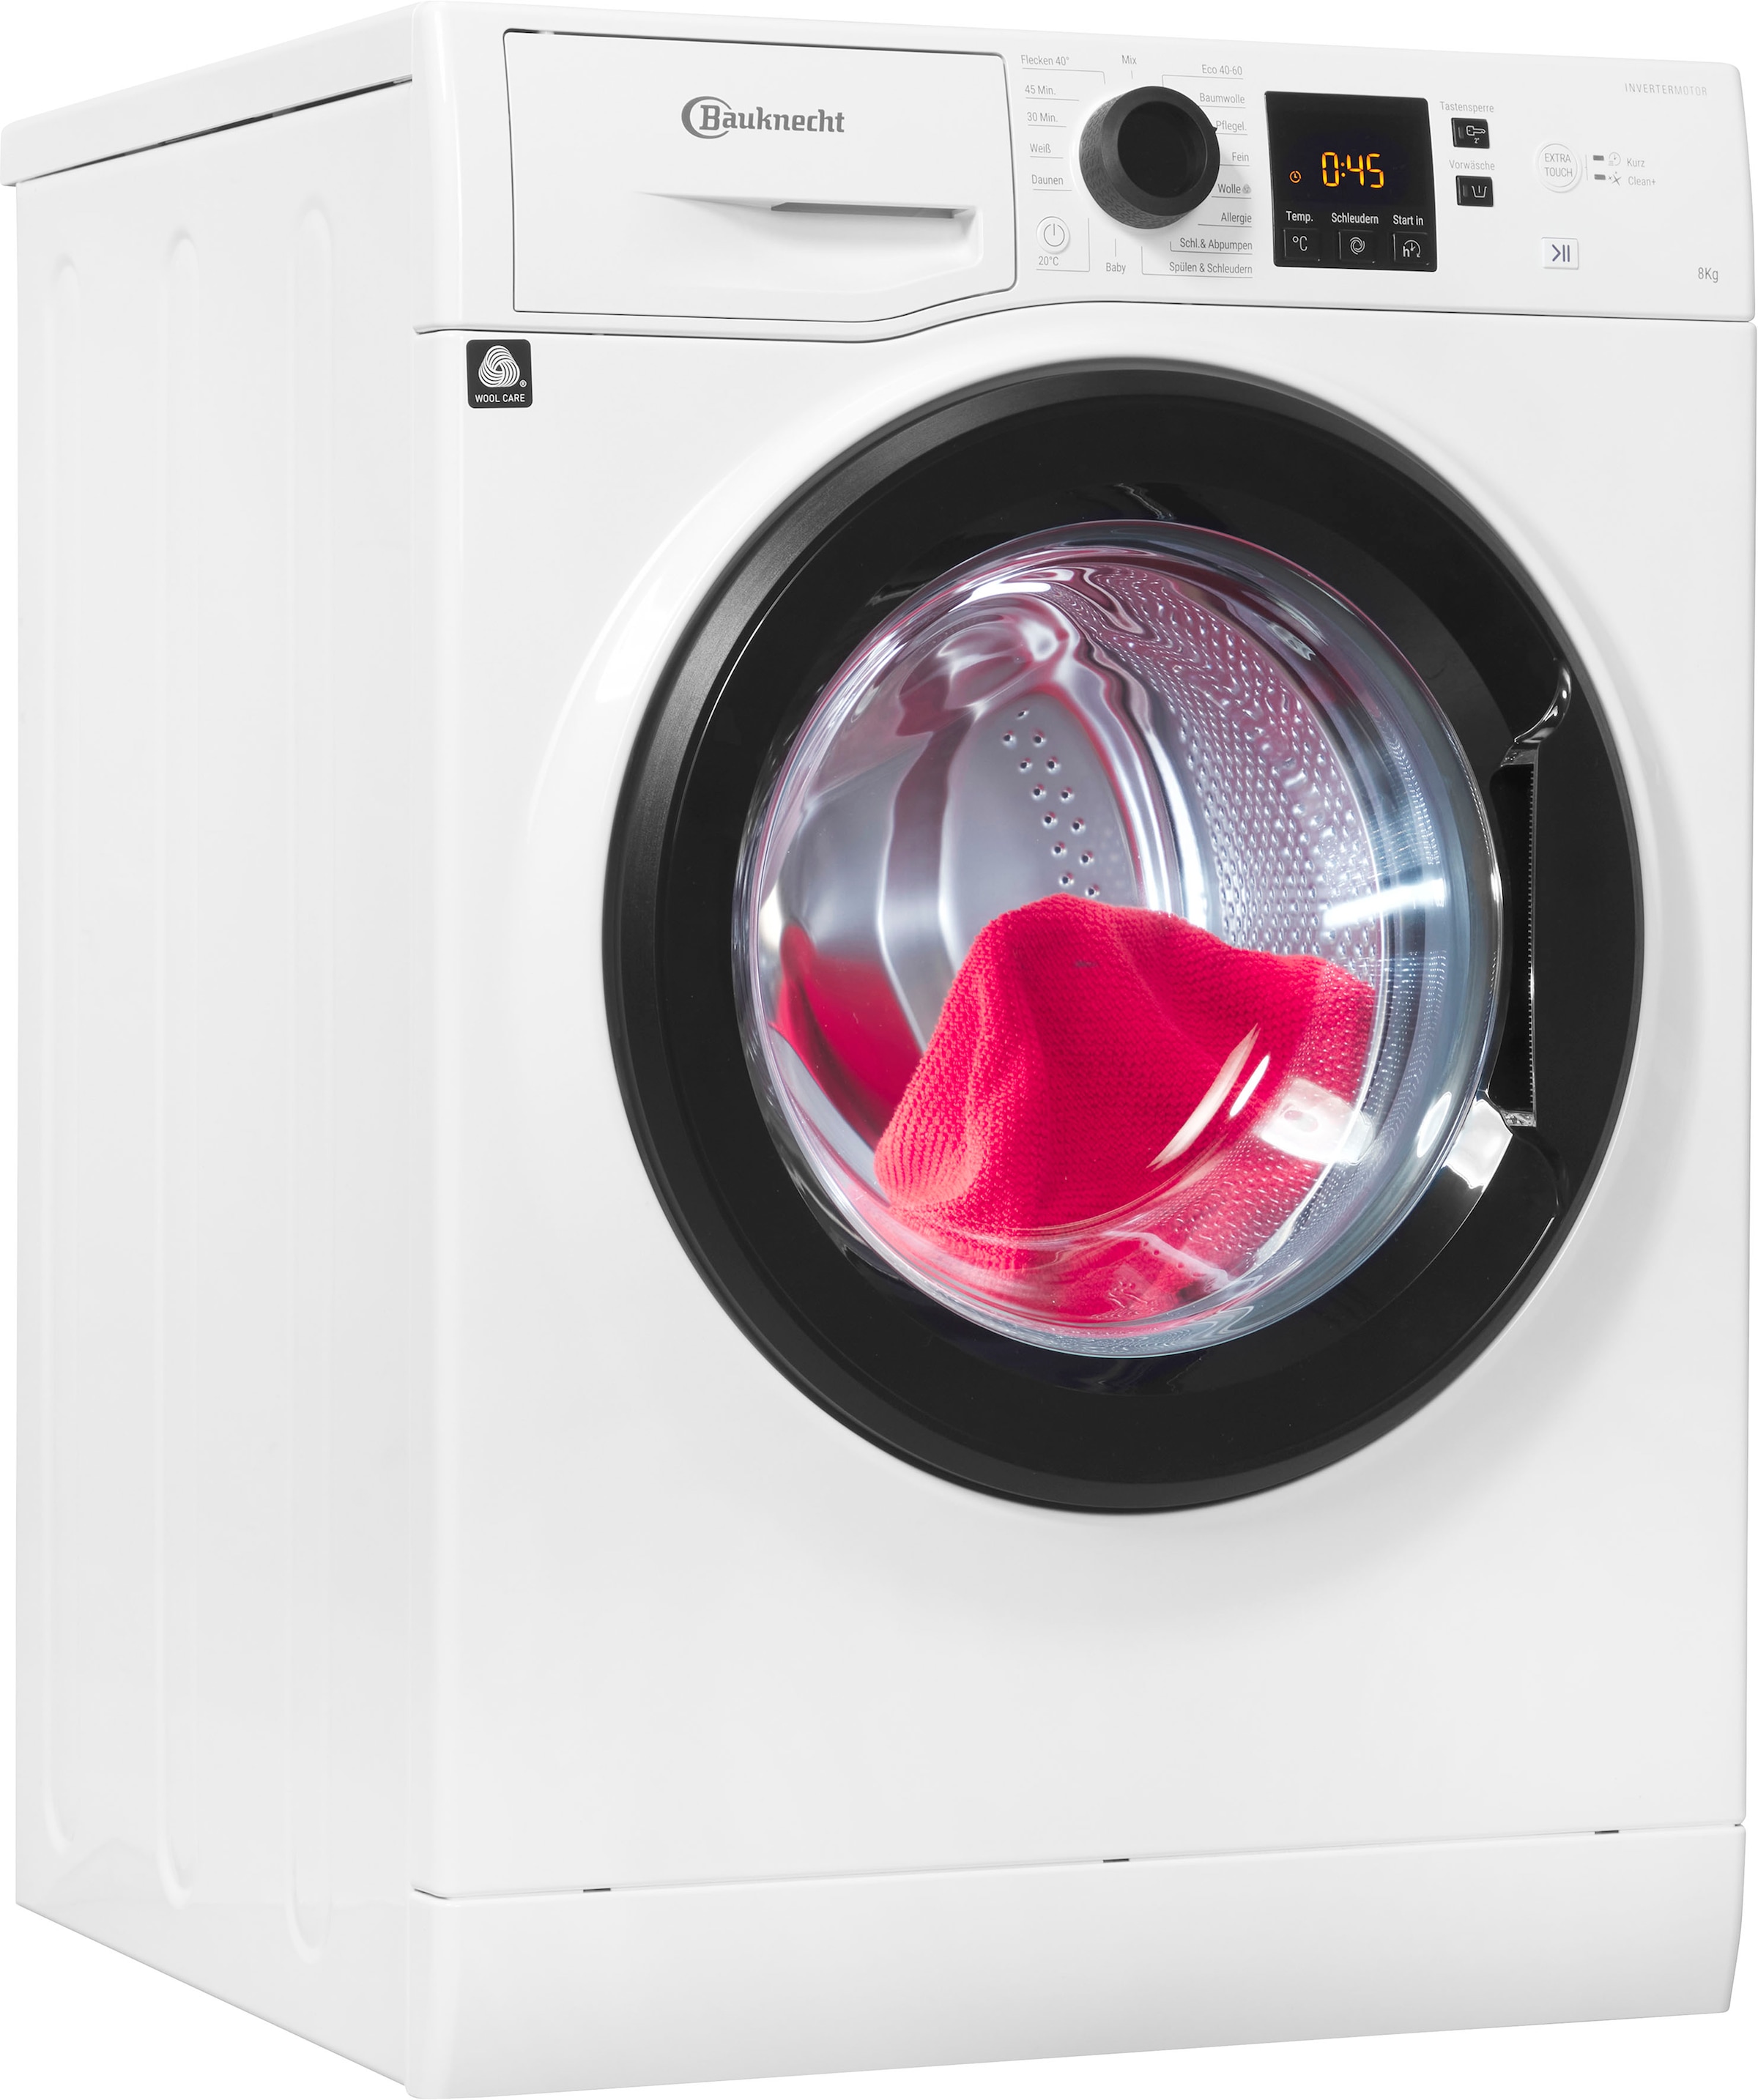 BAUKNECHT Waschmaschine »Super Eco 845 A«, Super Eco 845 A, 8 kg, 1400 U/min,  4 Jahre Herstellergarantie mit 3 Jahren XXL Garantie | Frontlader